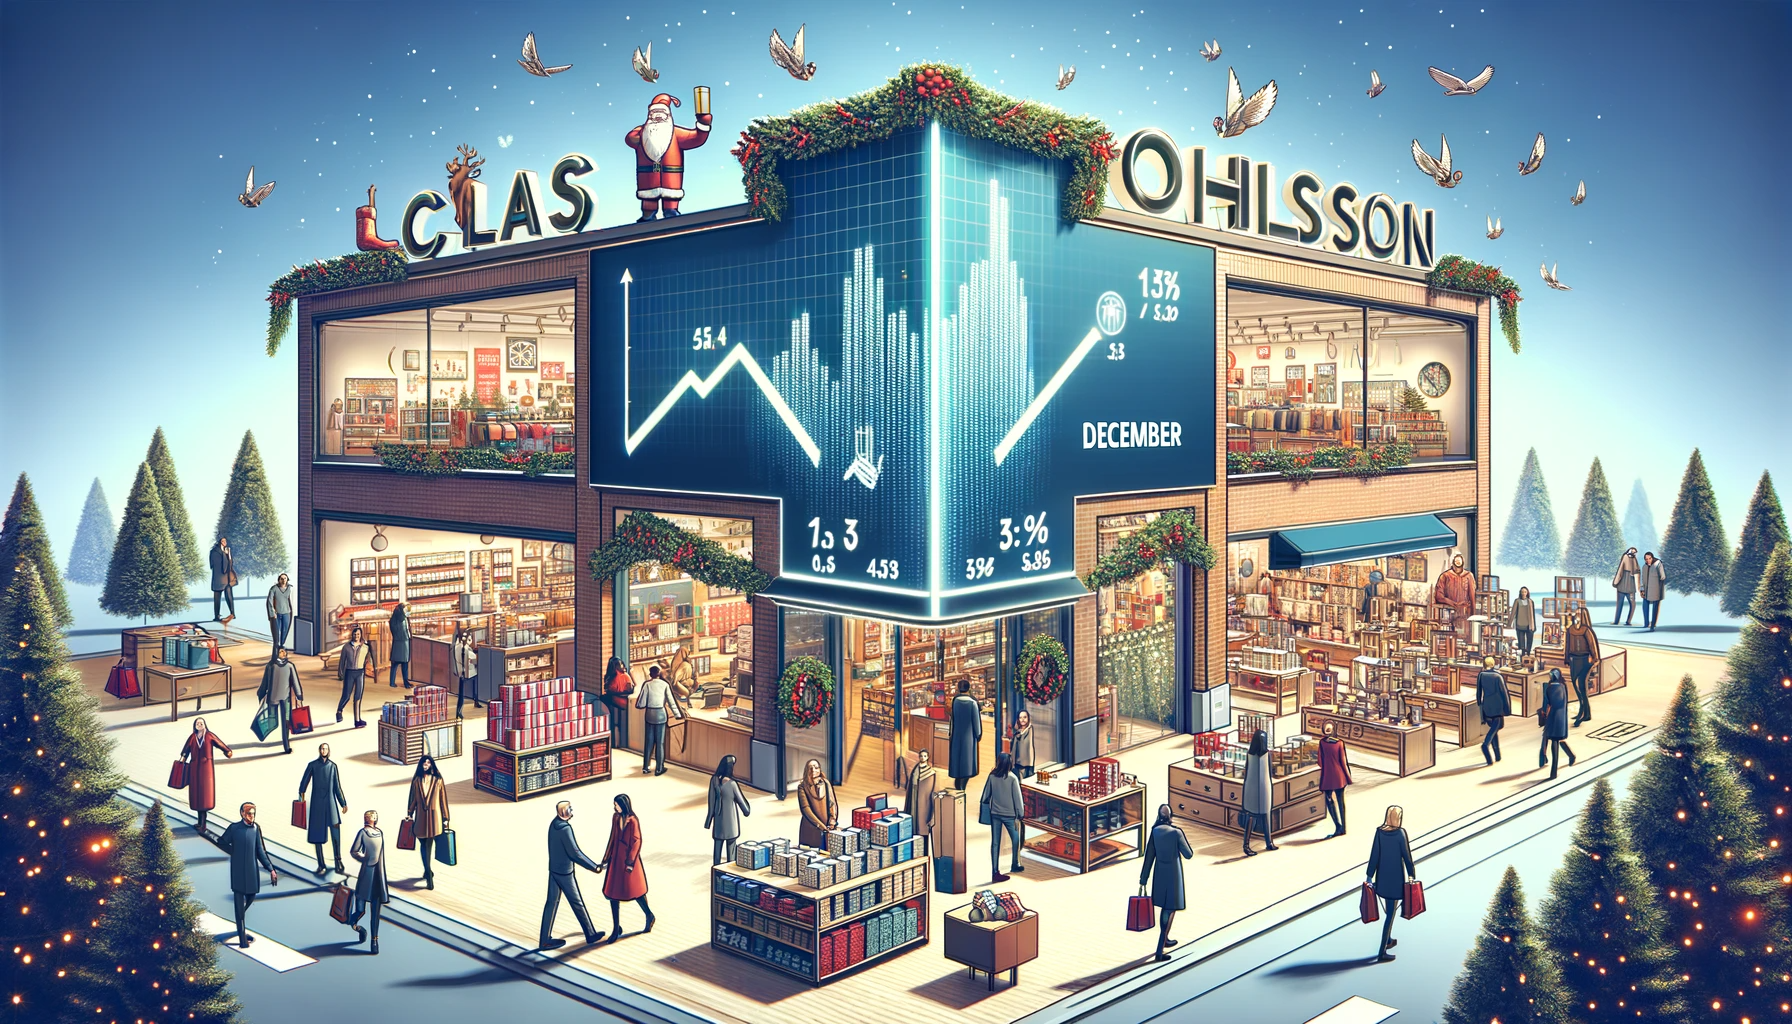 Clas Ohlson, det välkända detaljhandelsföretaget, uppvisade en anmärkningsvärd försäljningsökning under december månad.